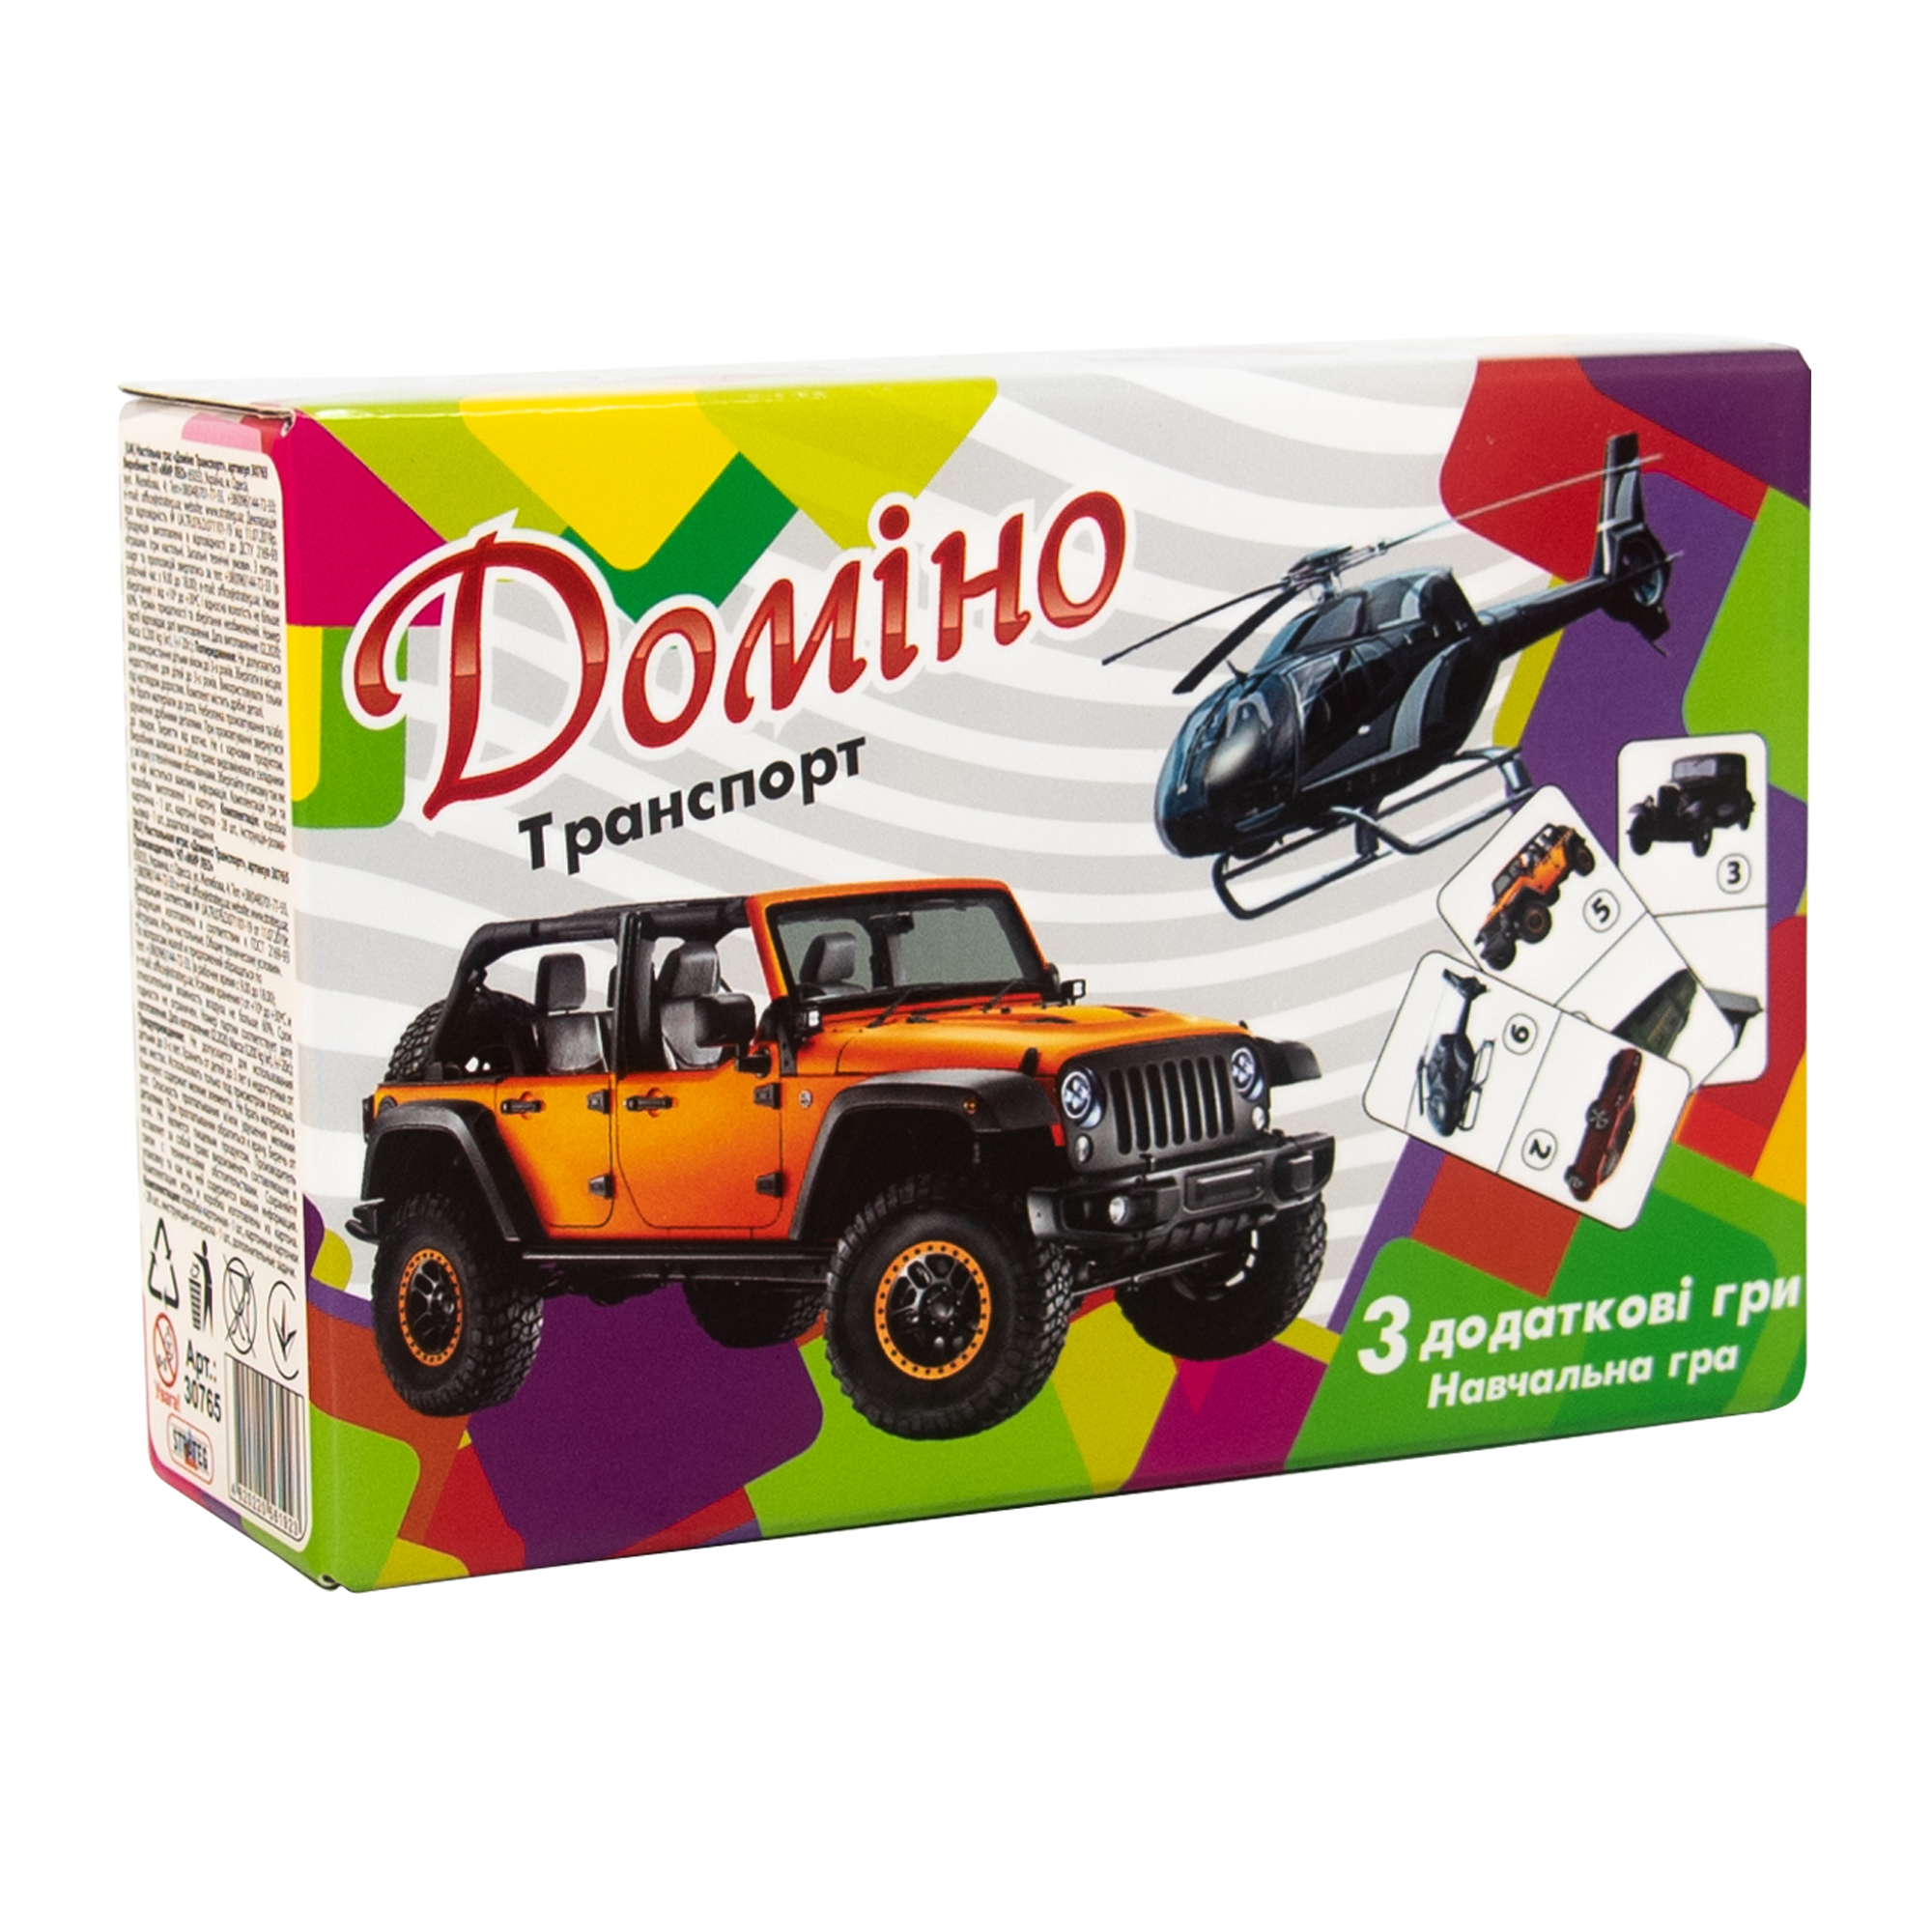 Domino "Transport" (ukr.) (30765)